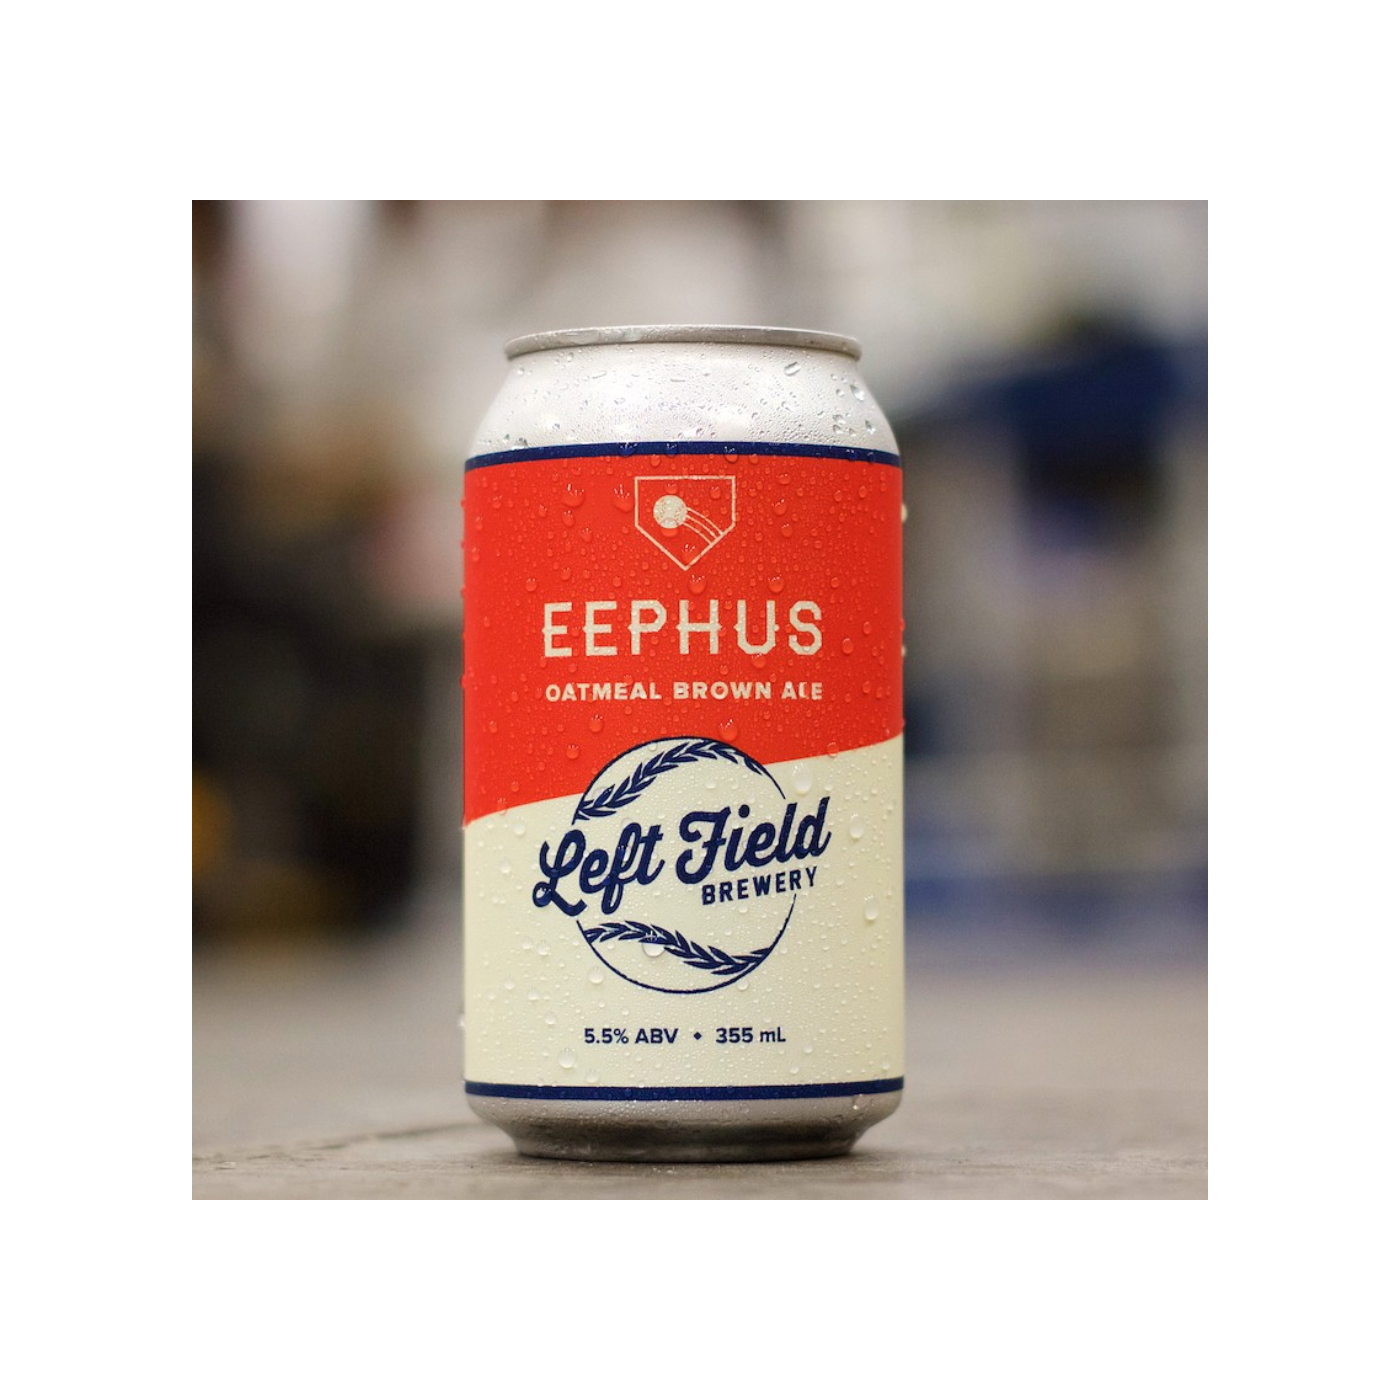 Eephus beer can design.